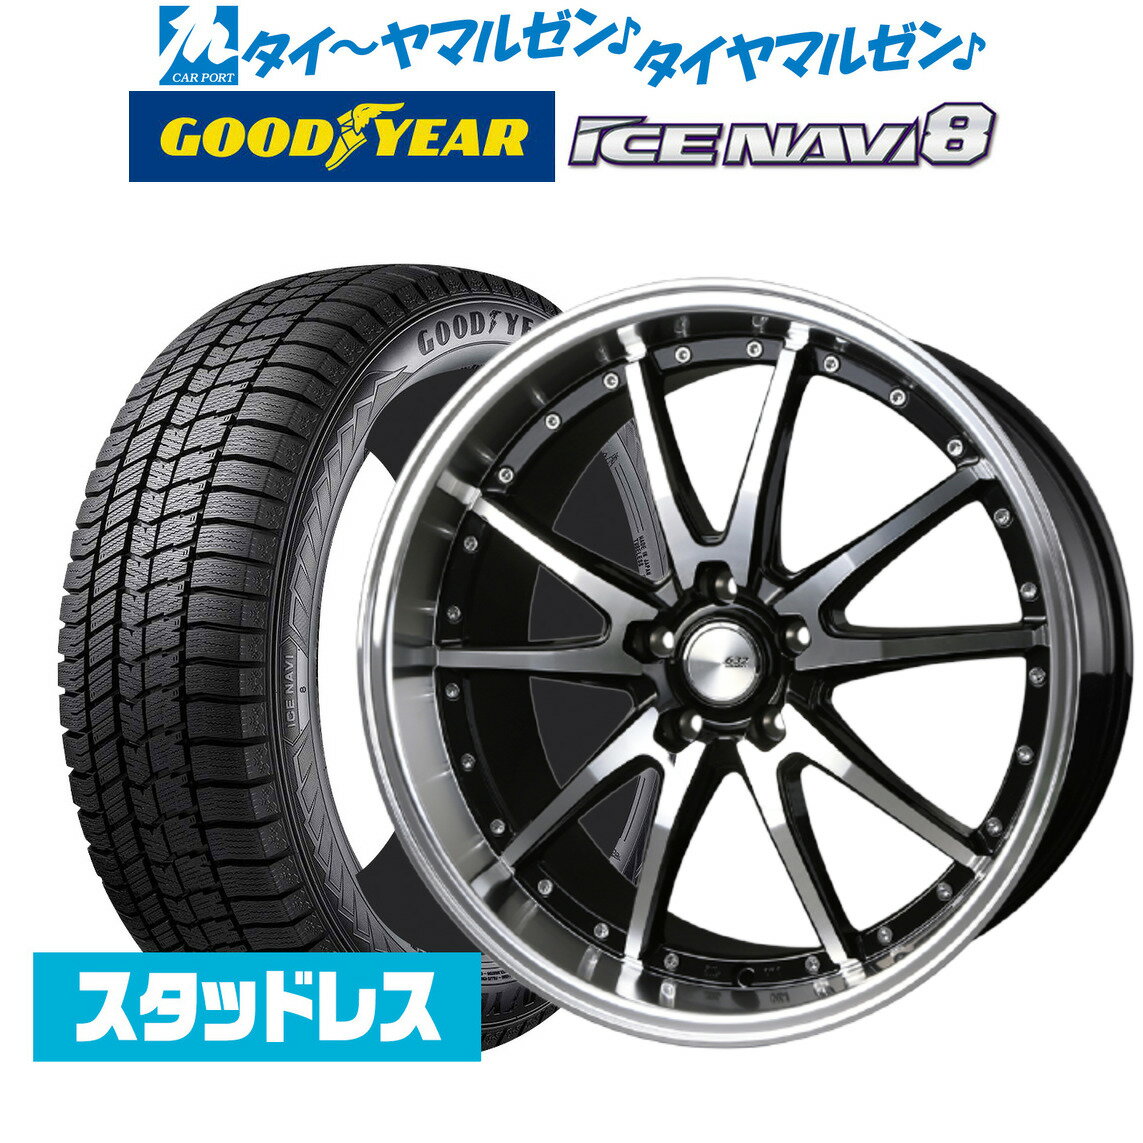 新品 スタッドレスタイヤ ホイール4本セットBADX ロクサーニ クロノグラスター19インチ 8.0Jグッドイヤー ICE NAVI アイスナビ 8 日本製 (2023年製) 225/55R19